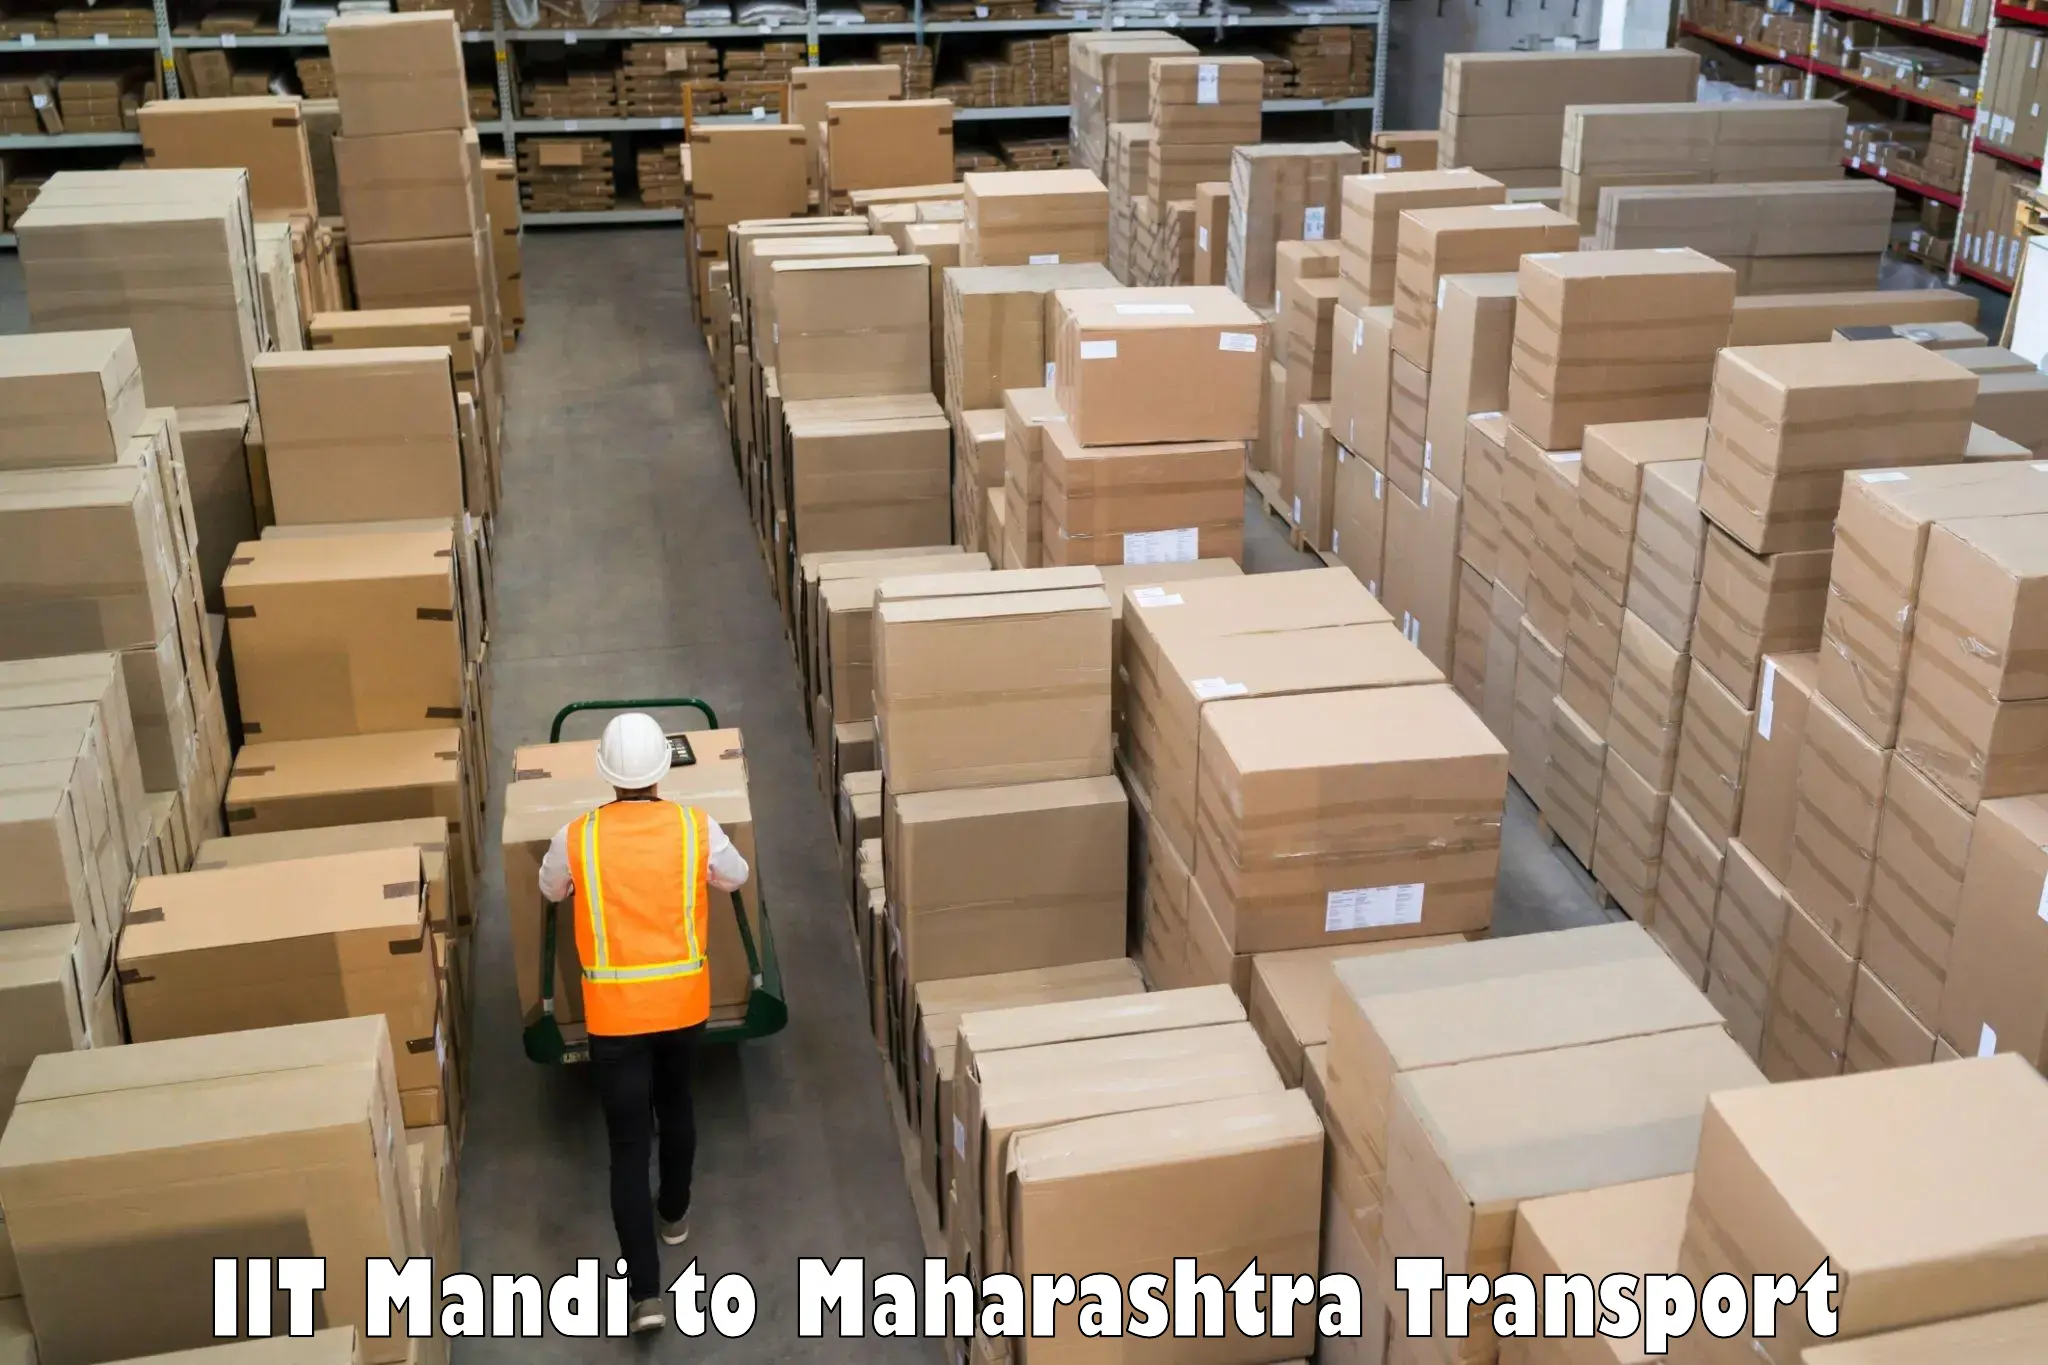 Bike shipping service IIT Mandi to Parli